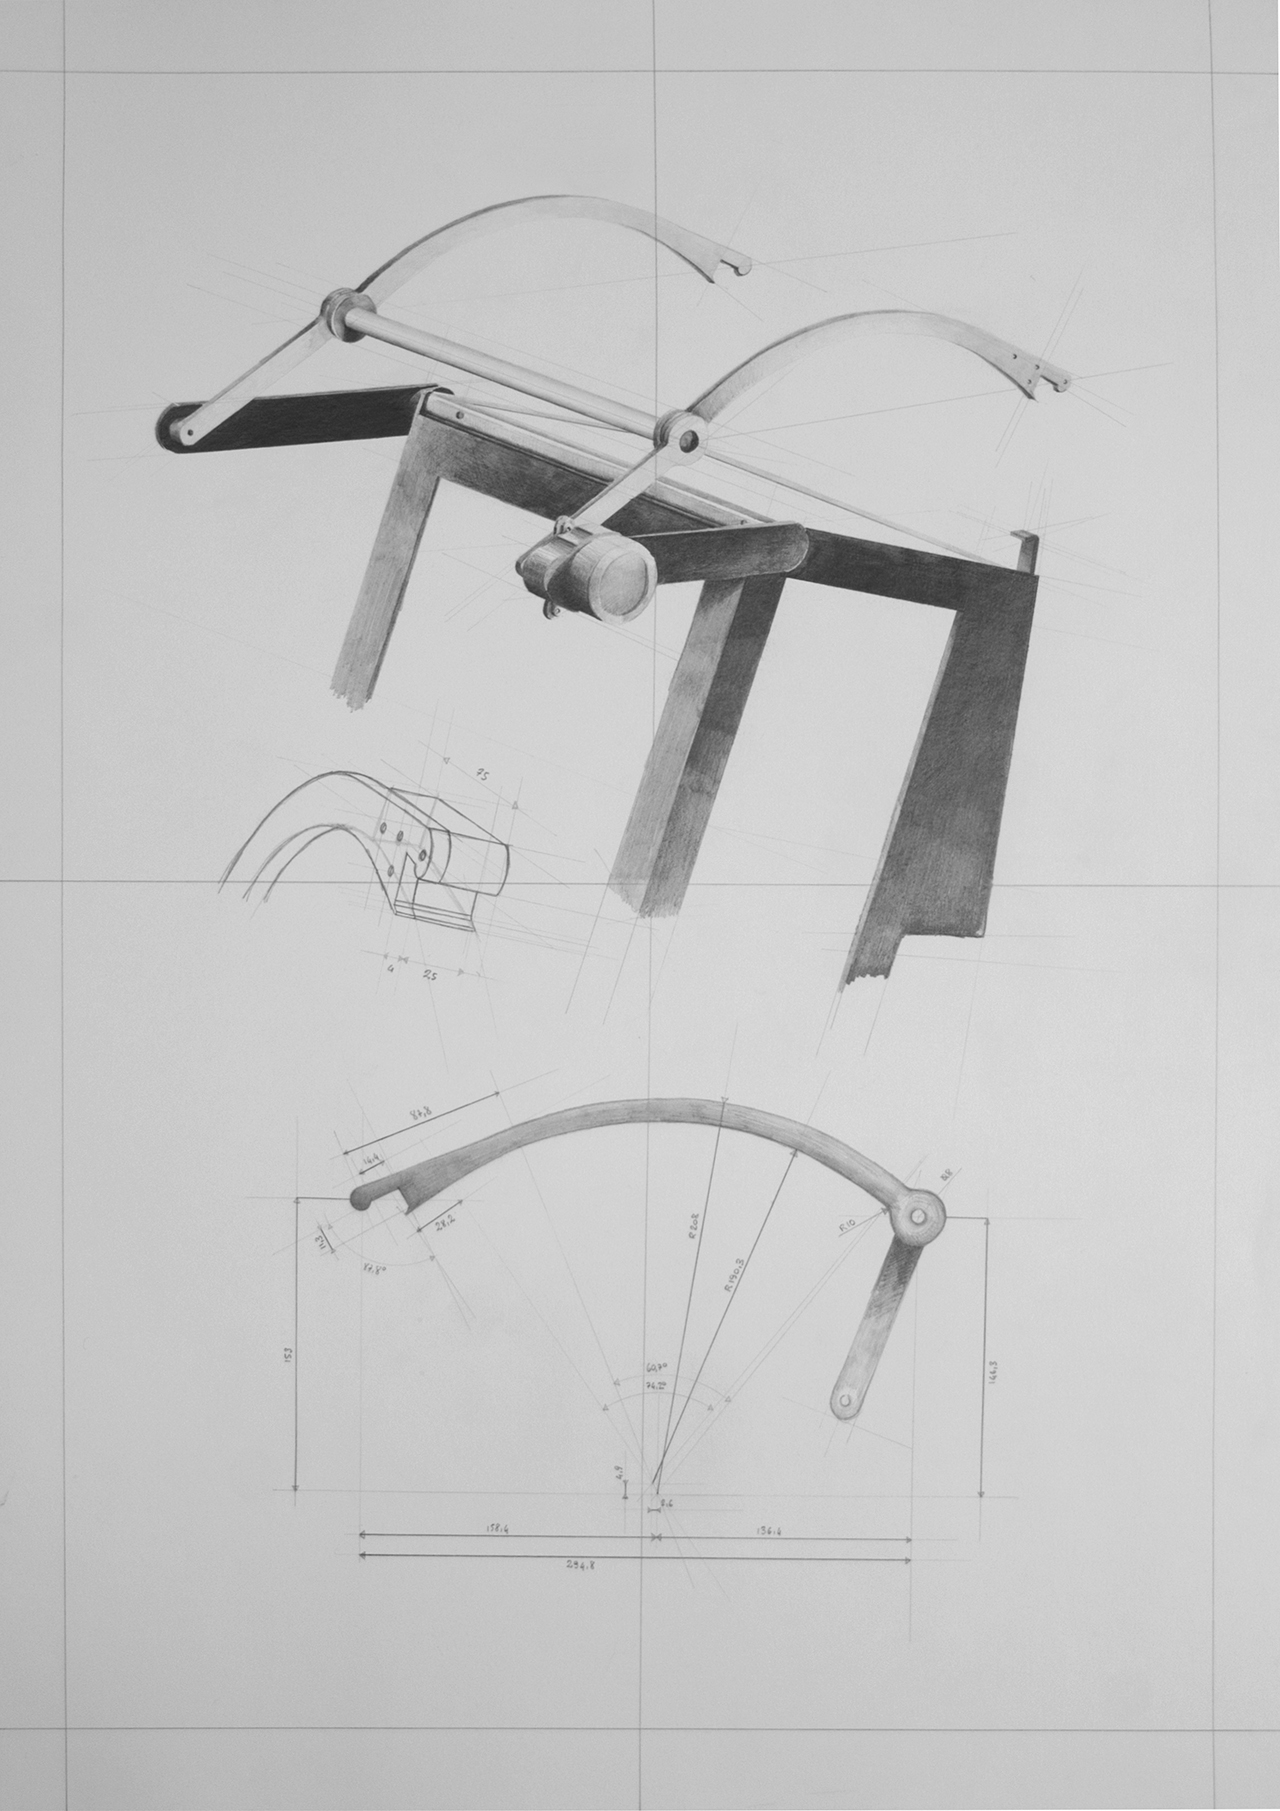 Marco Paganini Macchina progettata per mostare il passaggio di una nuvola